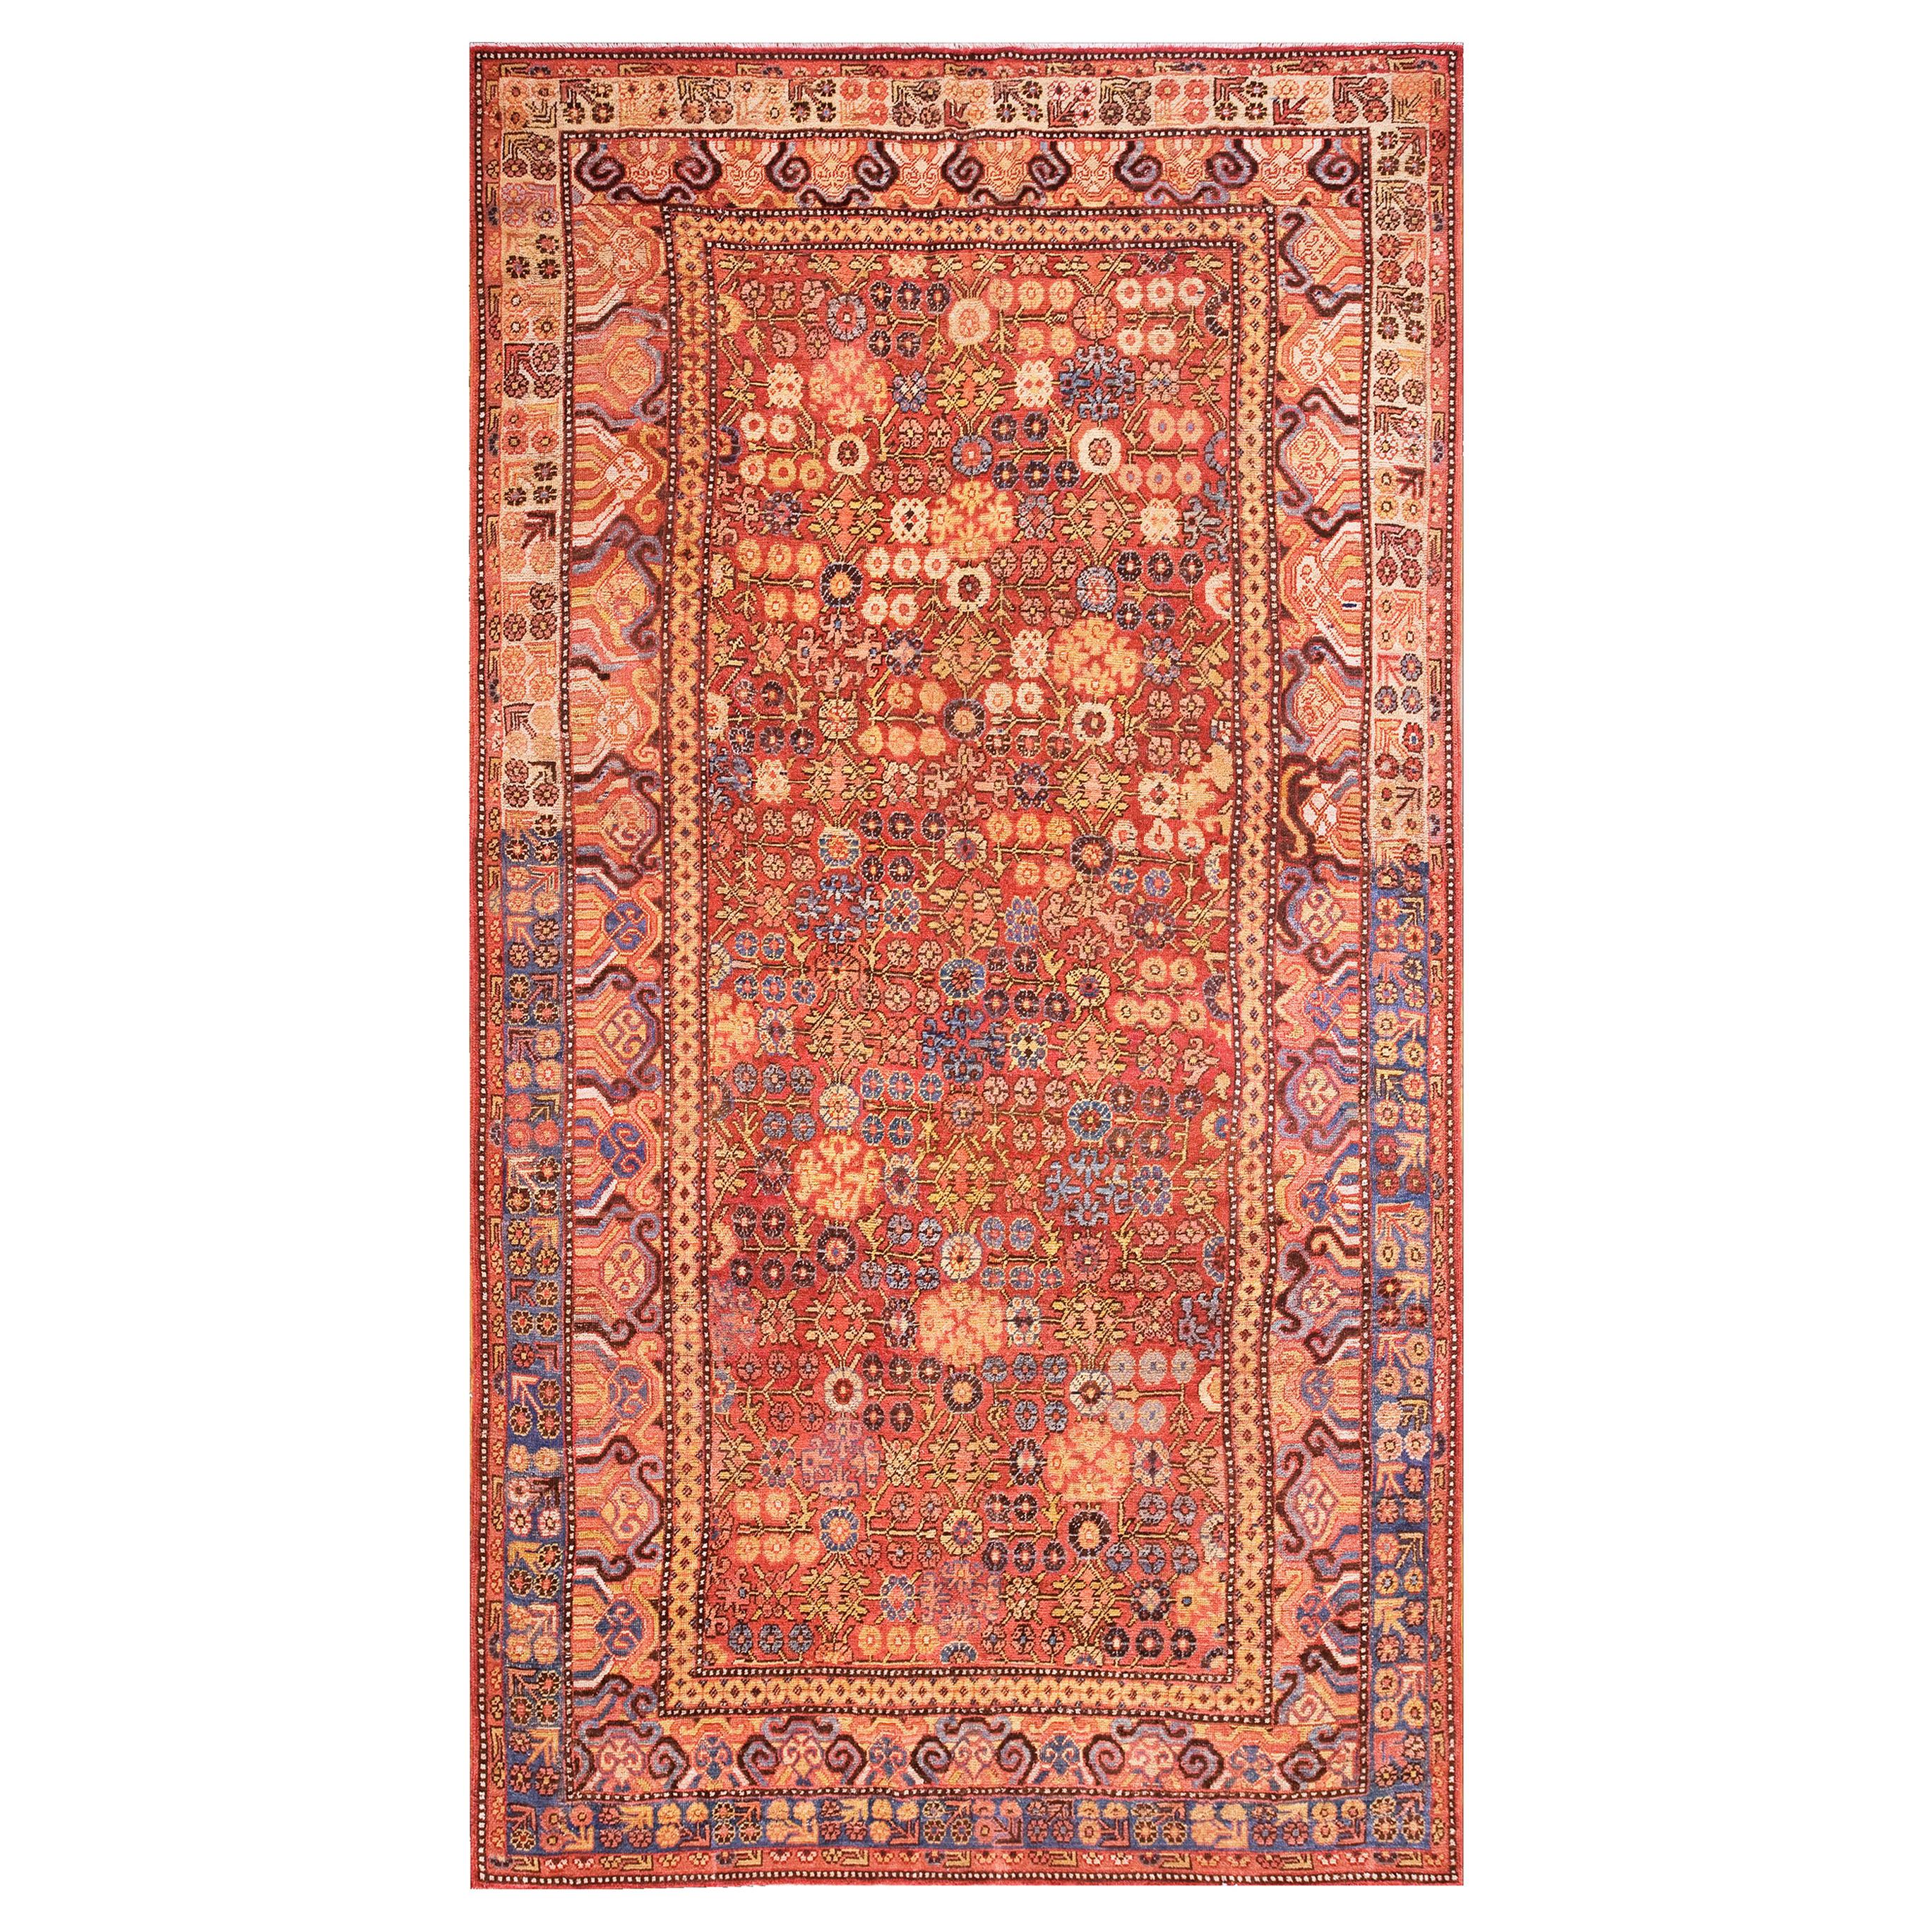 Zentralasiatischer chinesischer Khotan-Teppich des späten 18. Jahrhunderts (6'6" x 11'6" - 198 x 355)